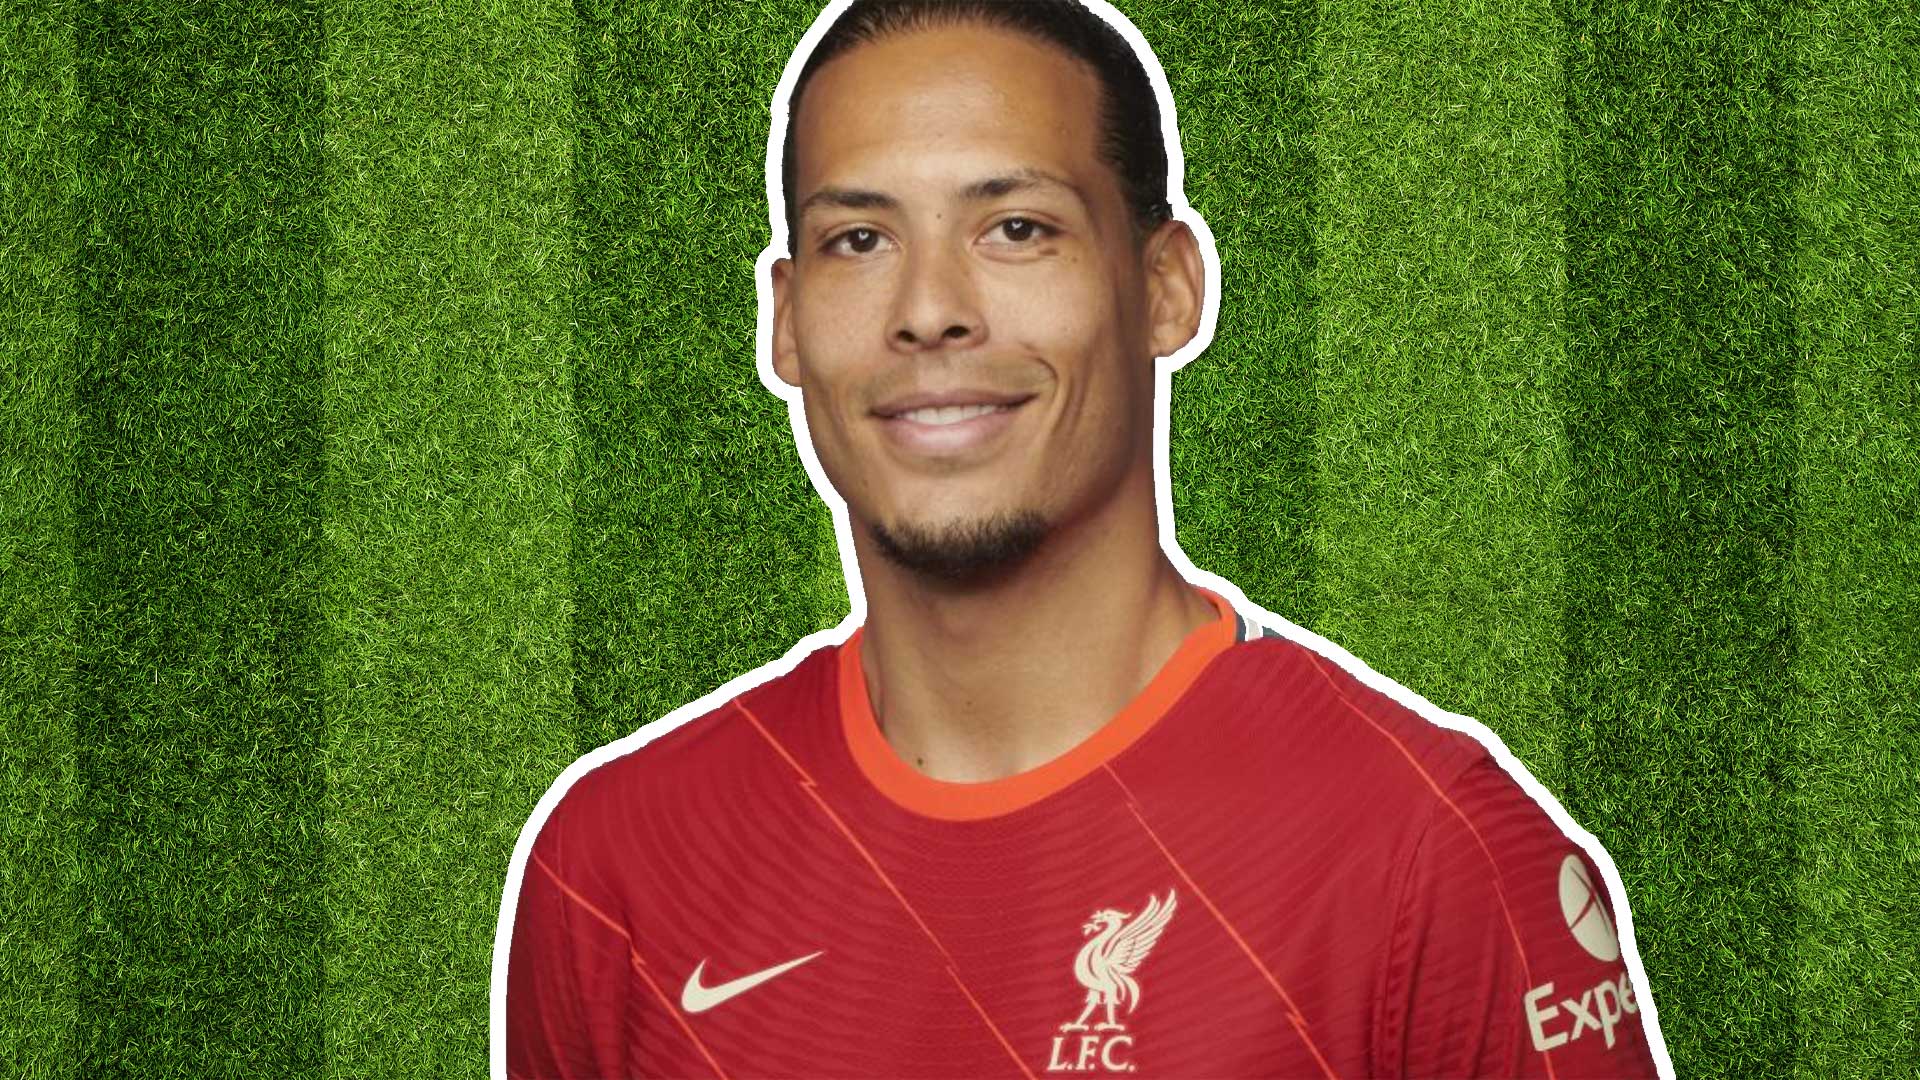 Liverpool player Virgil Van Dijk